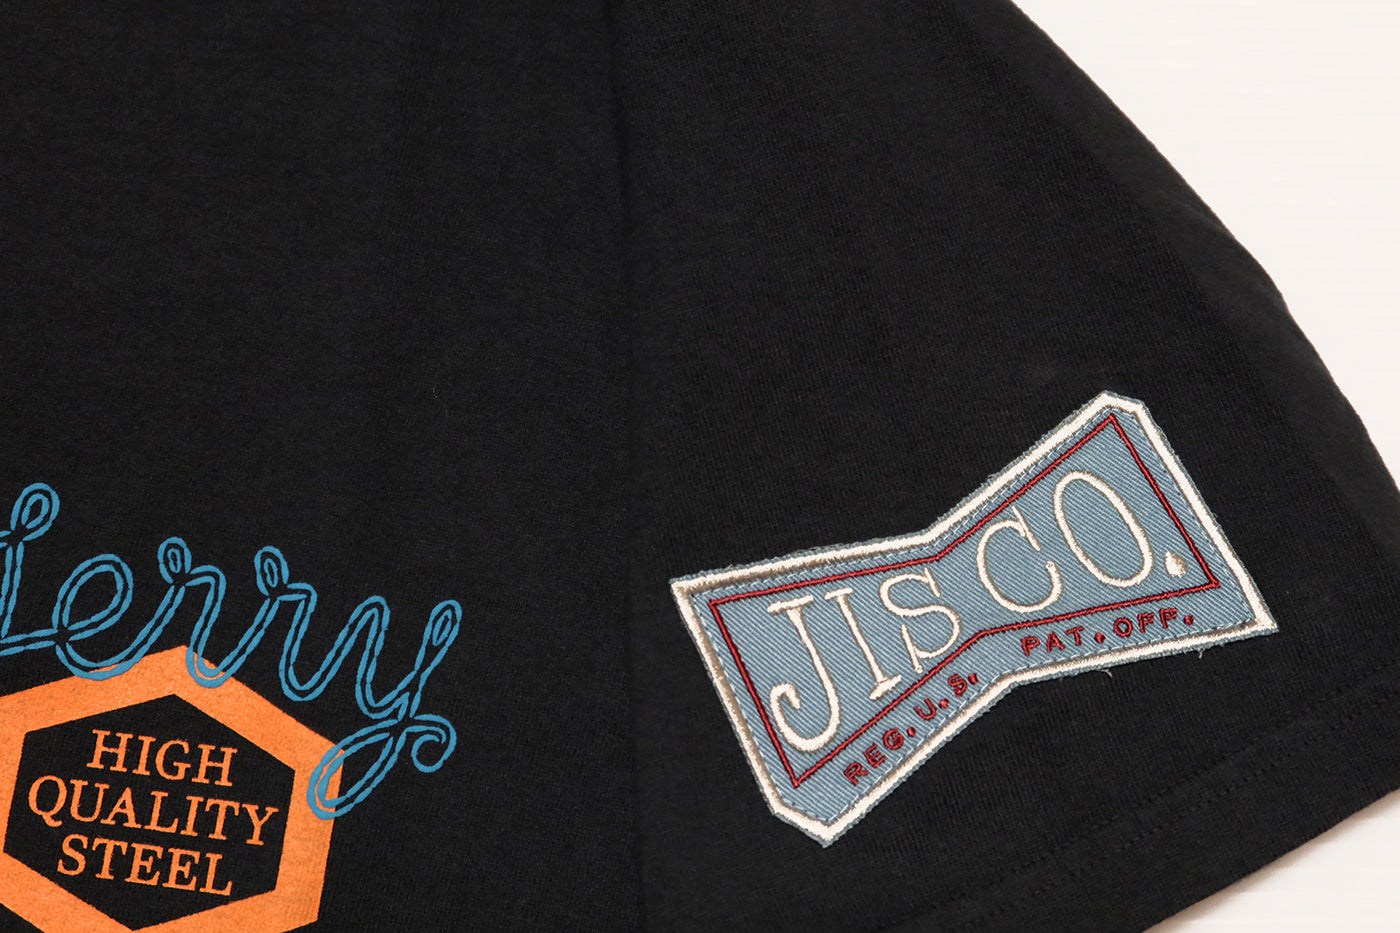 Pherrow's T-shirt JACK'S INDUSTRIAL STEEL Co. Men's Short Sleeve 24S-PT3